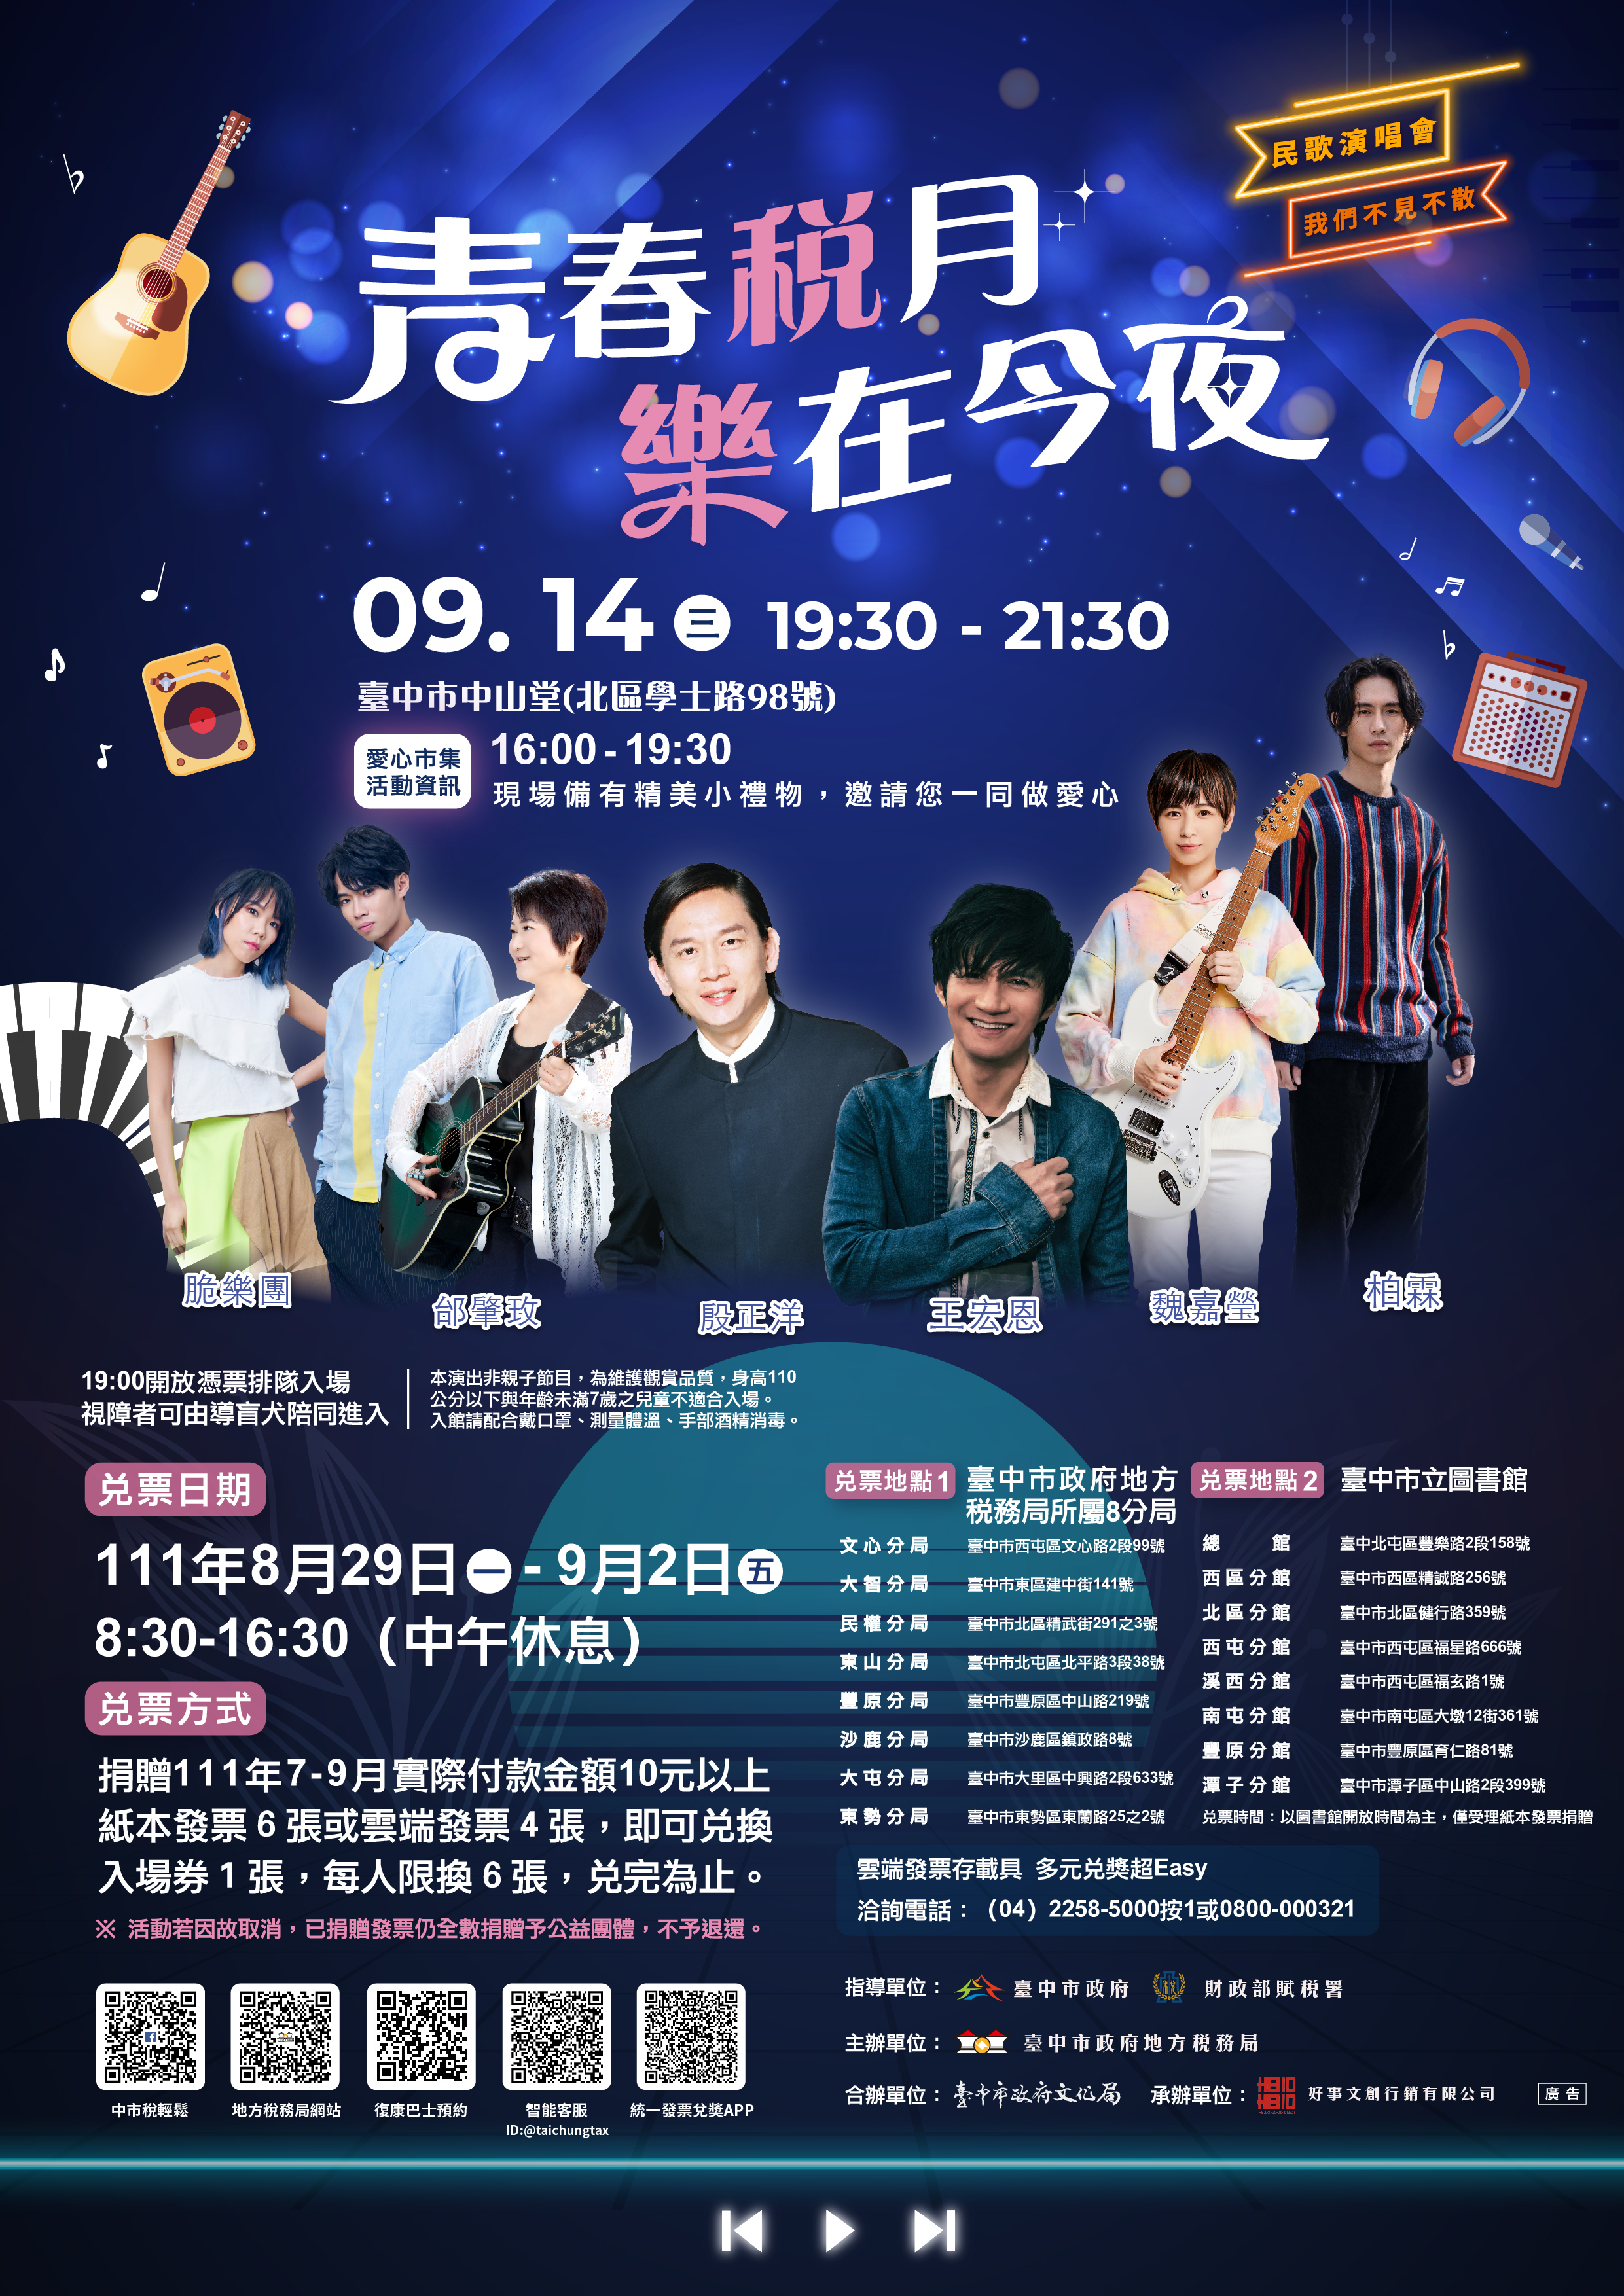 臺中市政府地方稅務局《青春稅月 樂在今夜》演唱會、共2張圖片